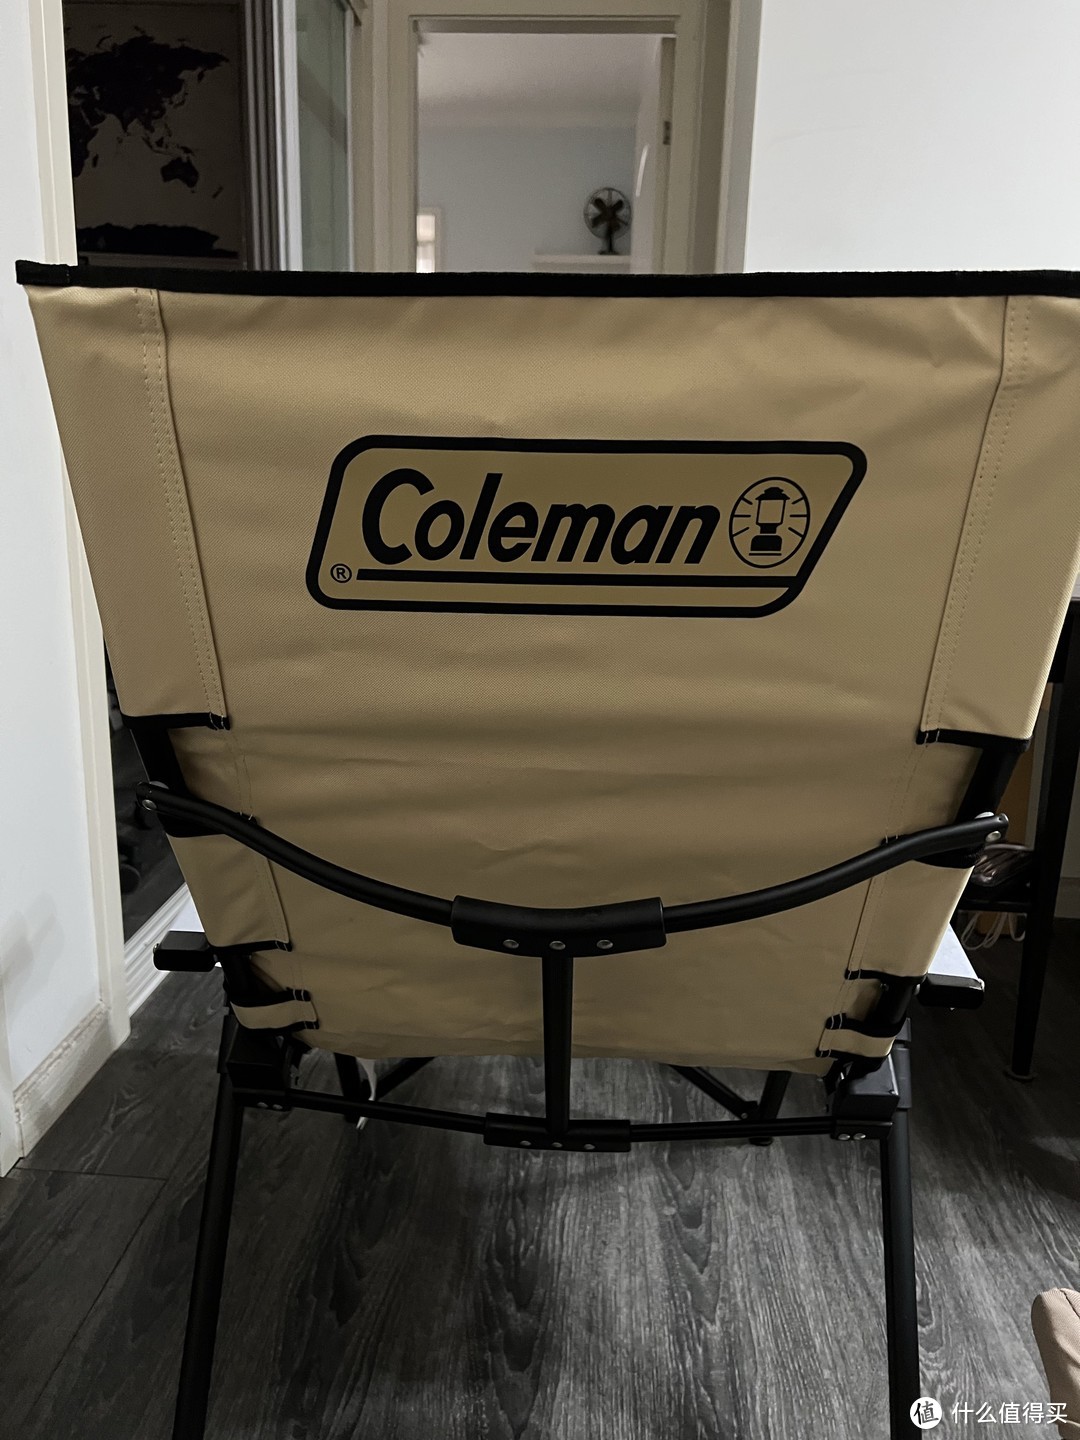 搬家露营最舒服的平价折叠椅coleman